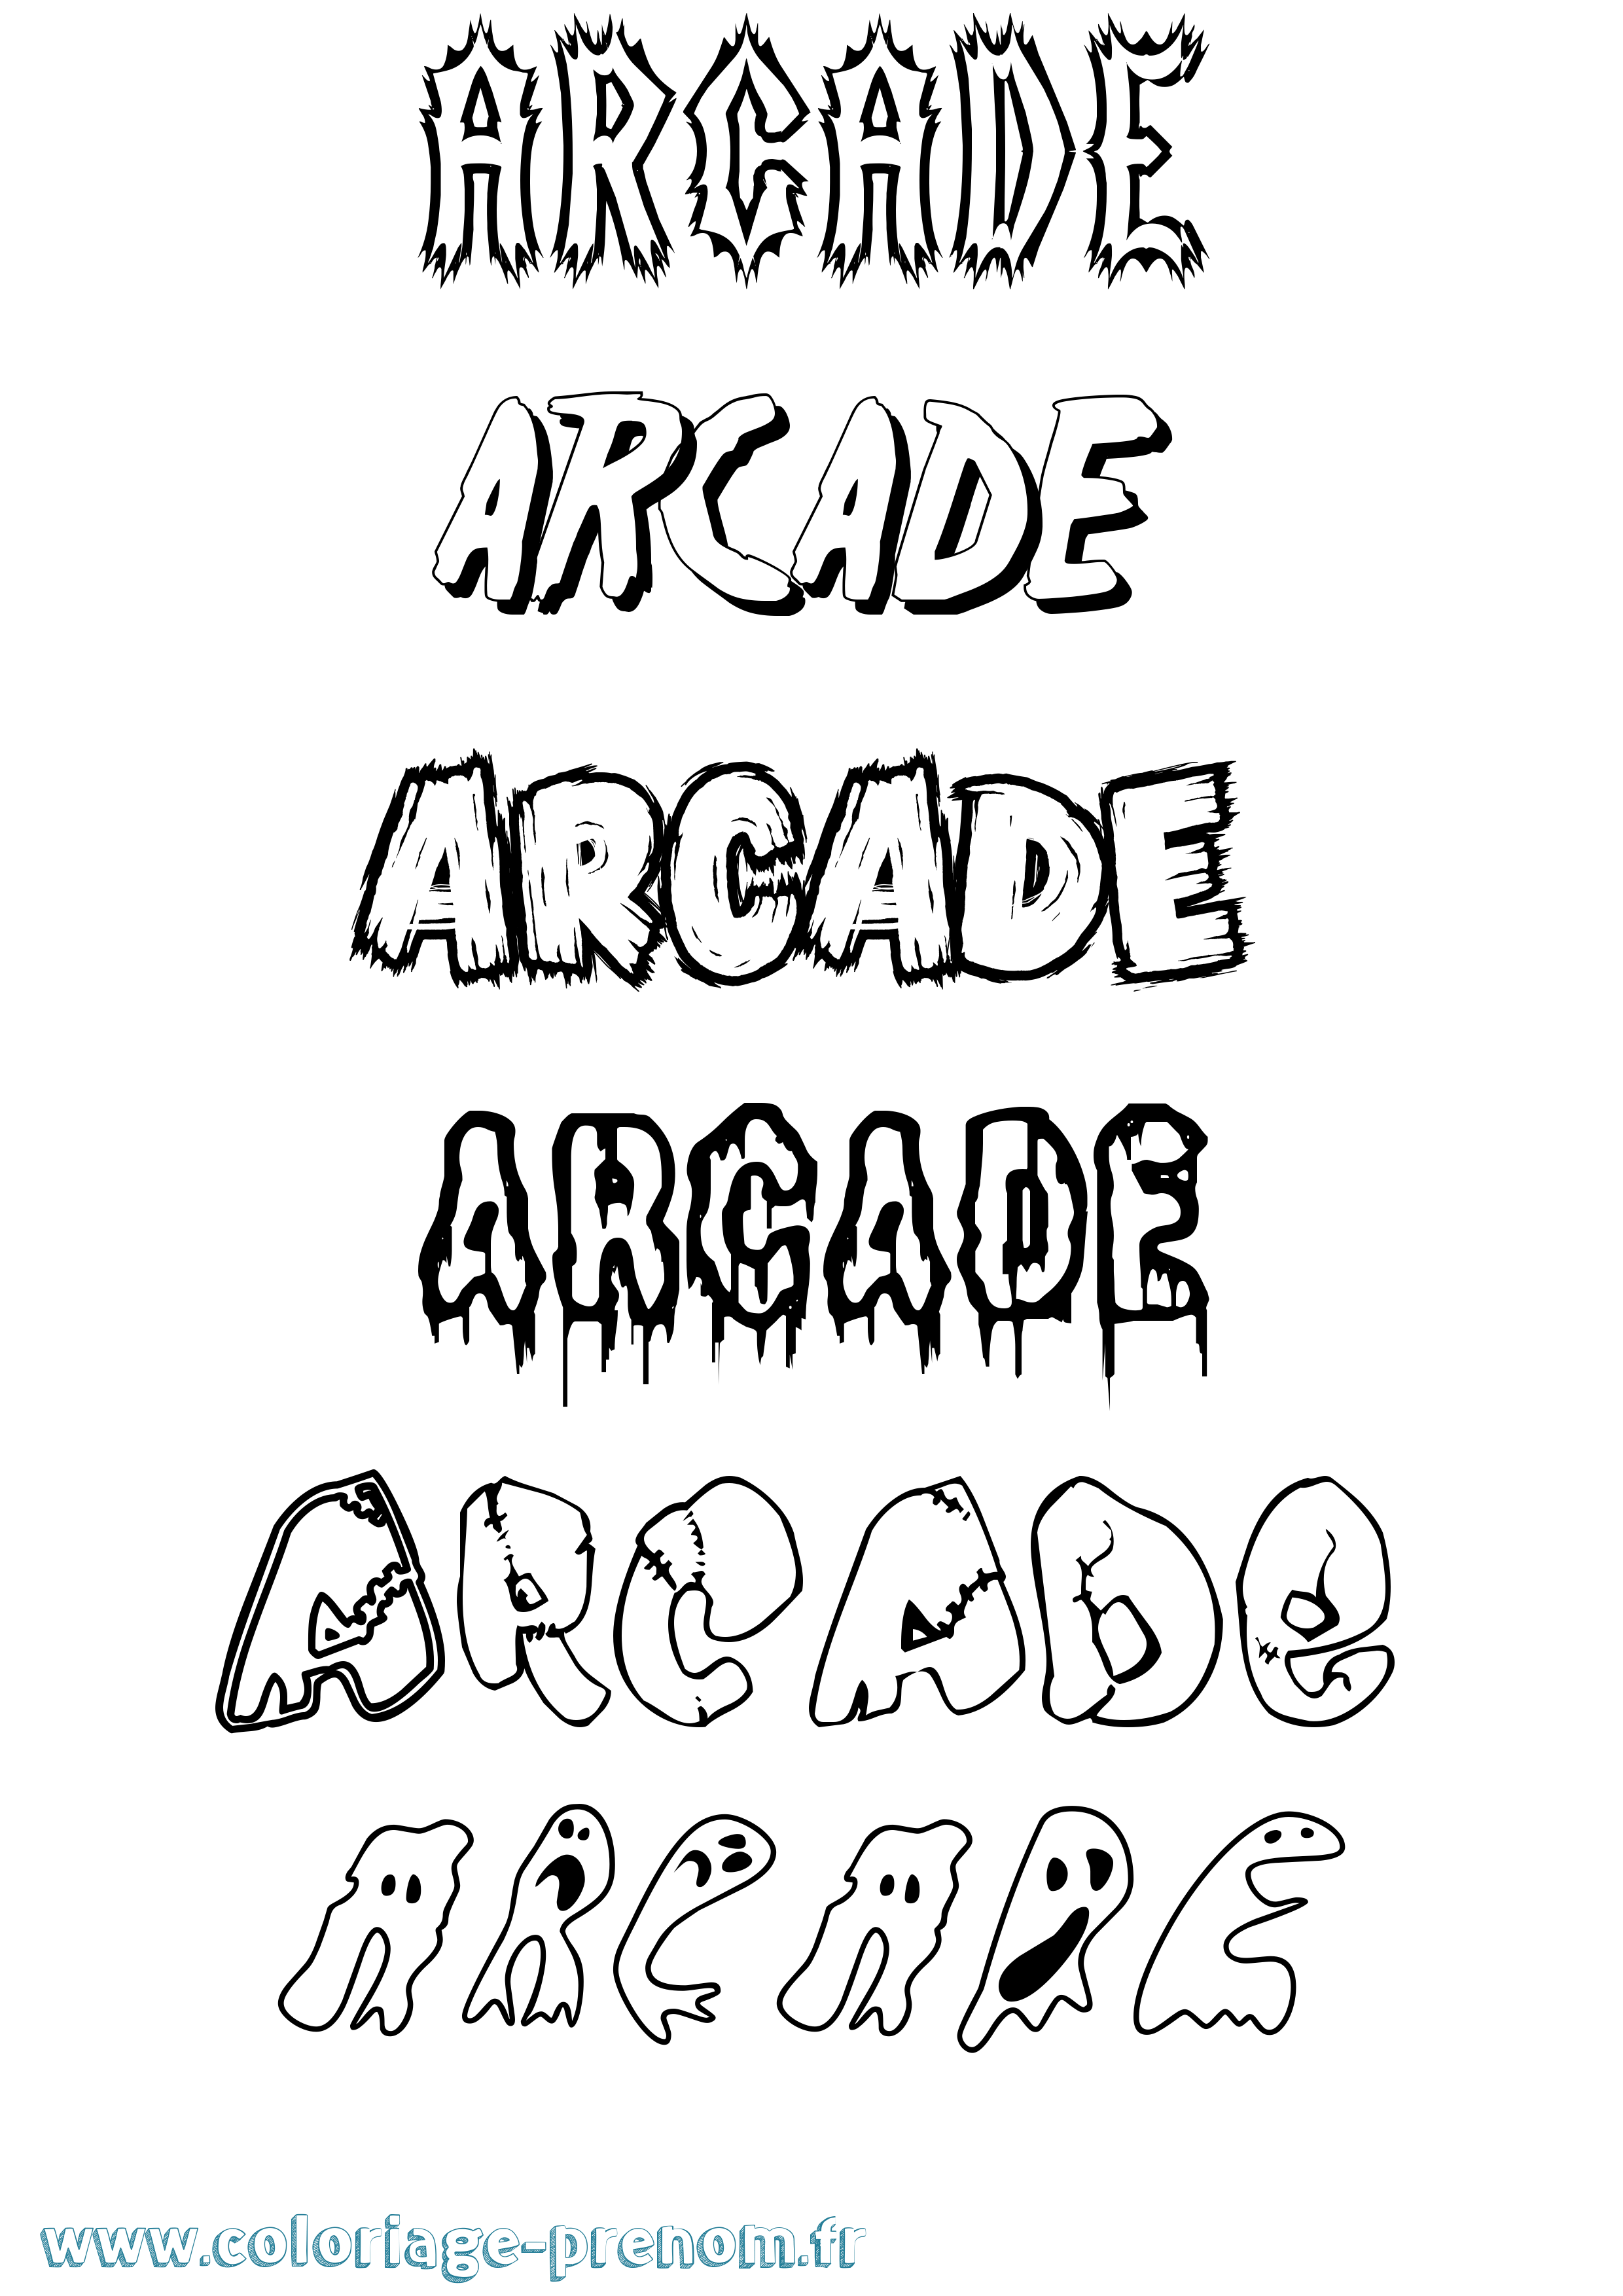 Coloriage prénom Arcade Frisson